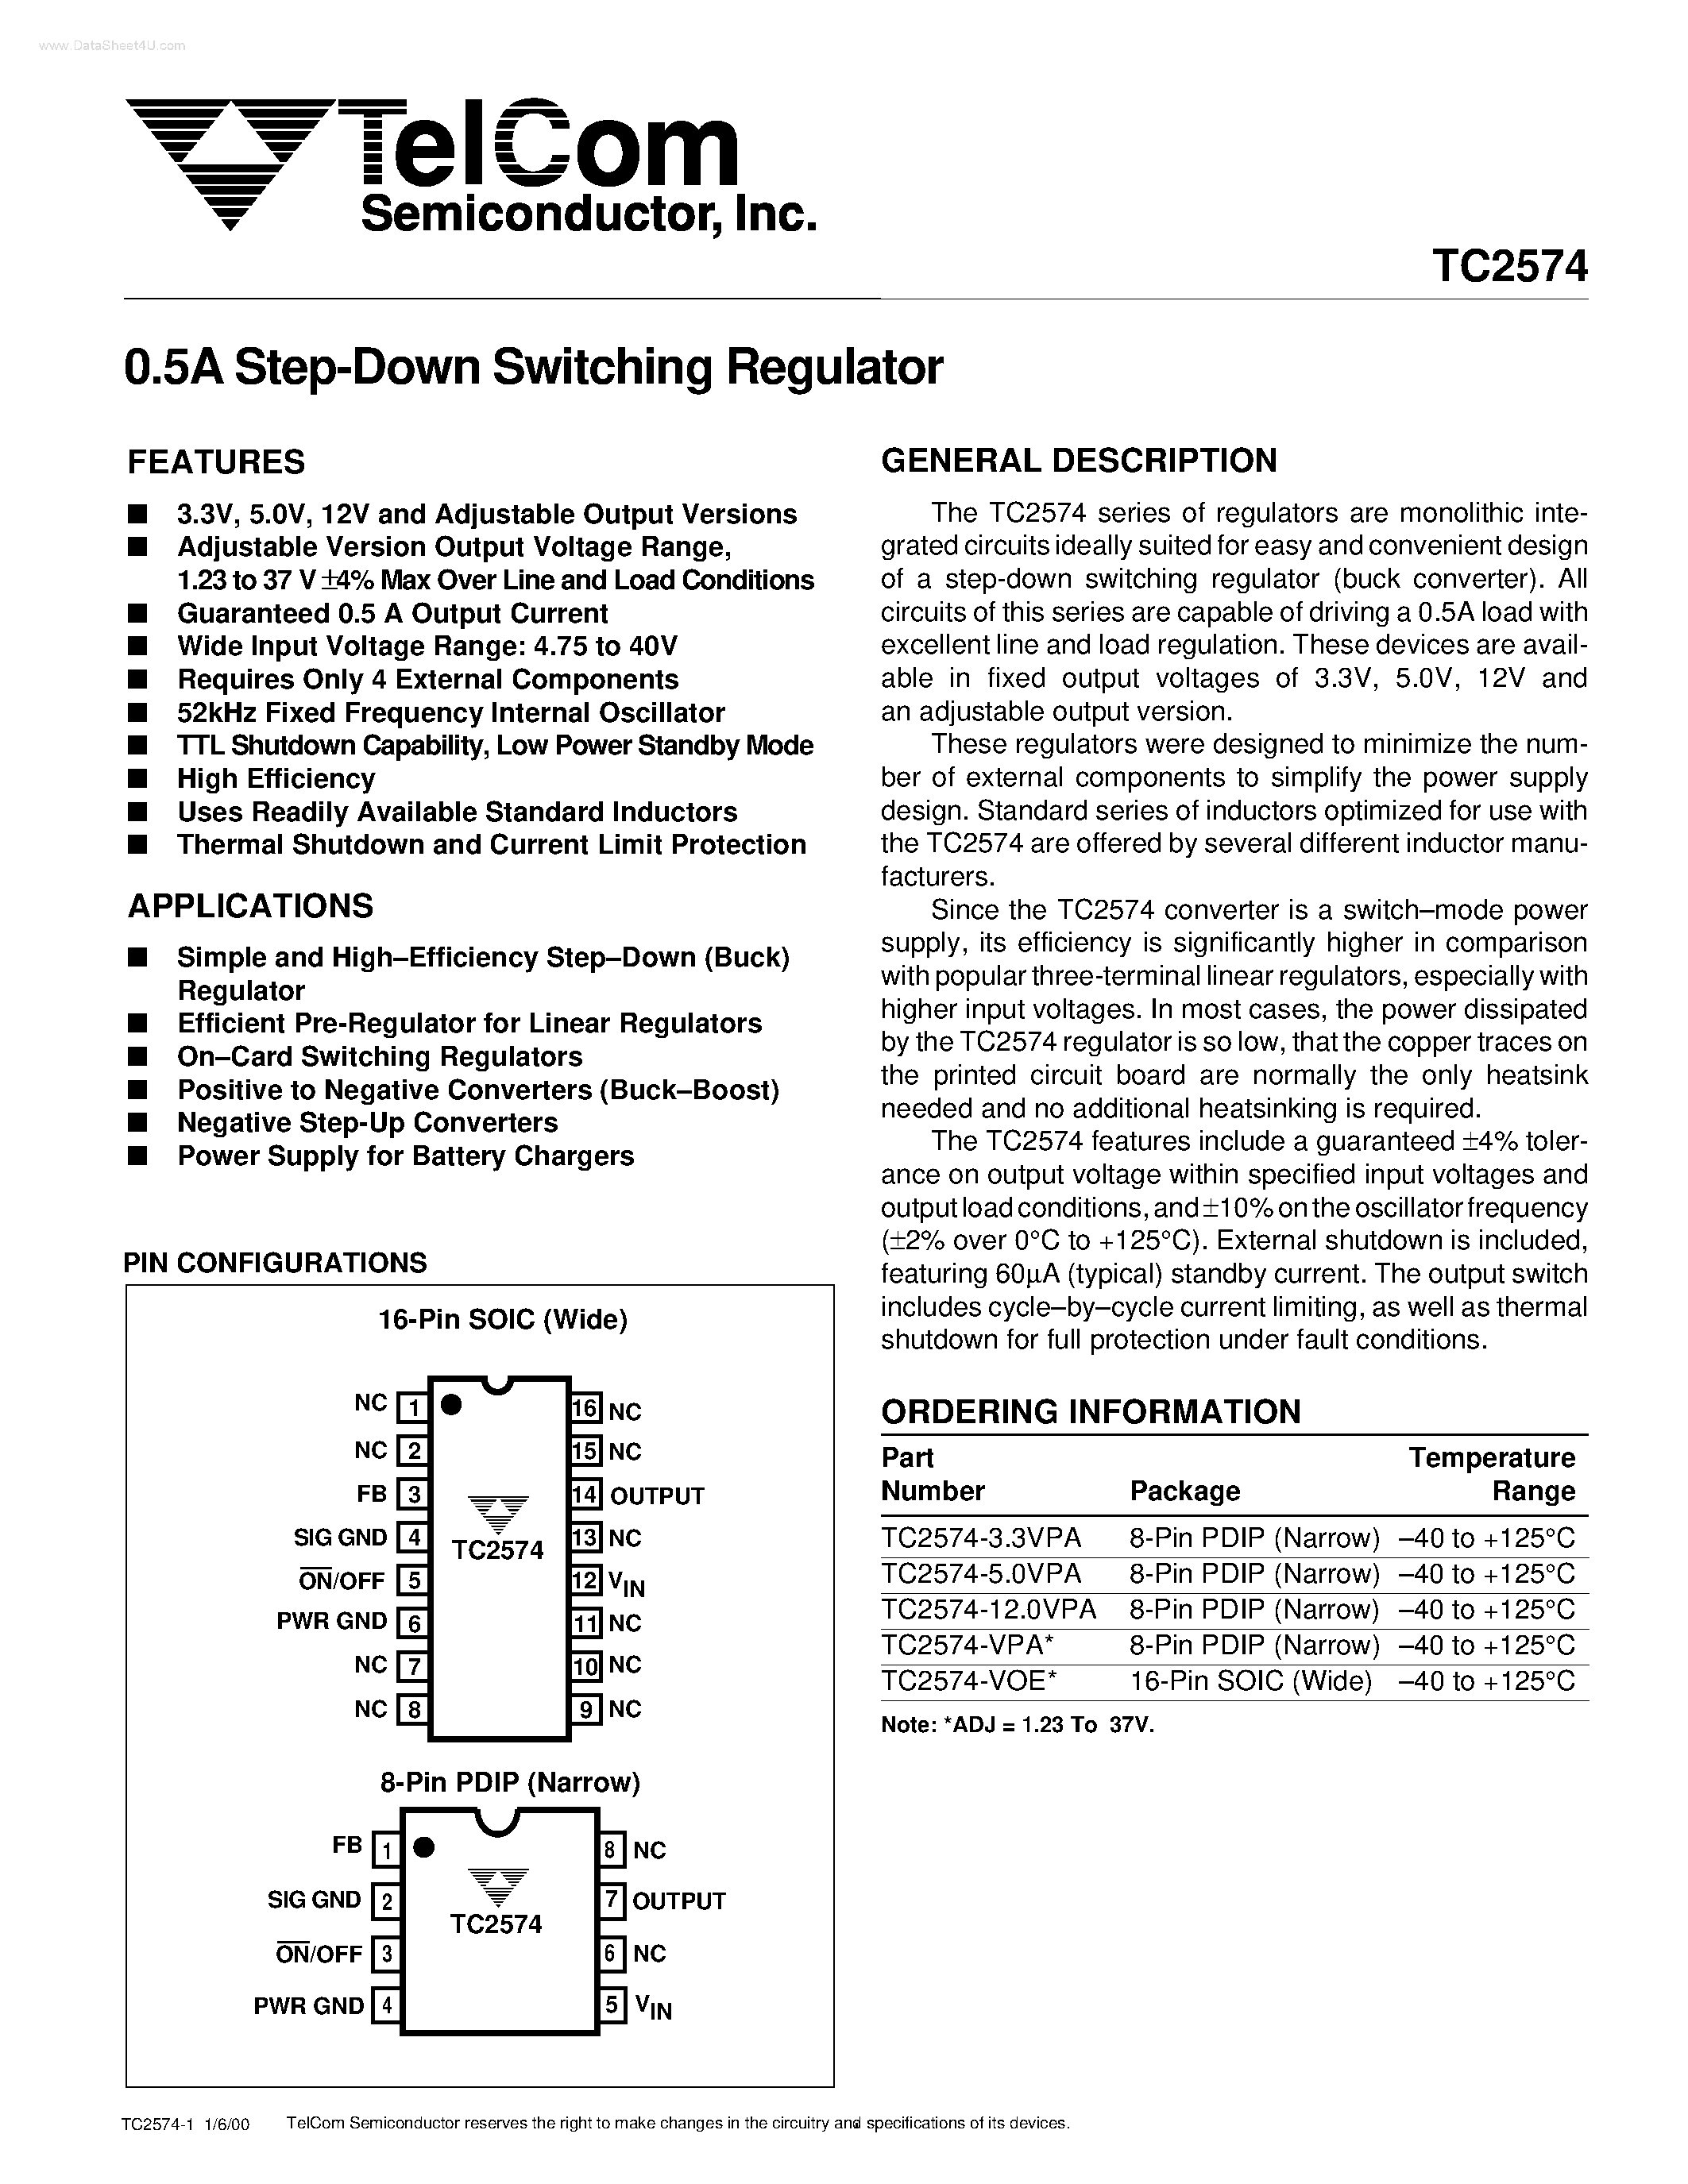 Даташит TC2574 - Step-Down Switching Regulator страница 1